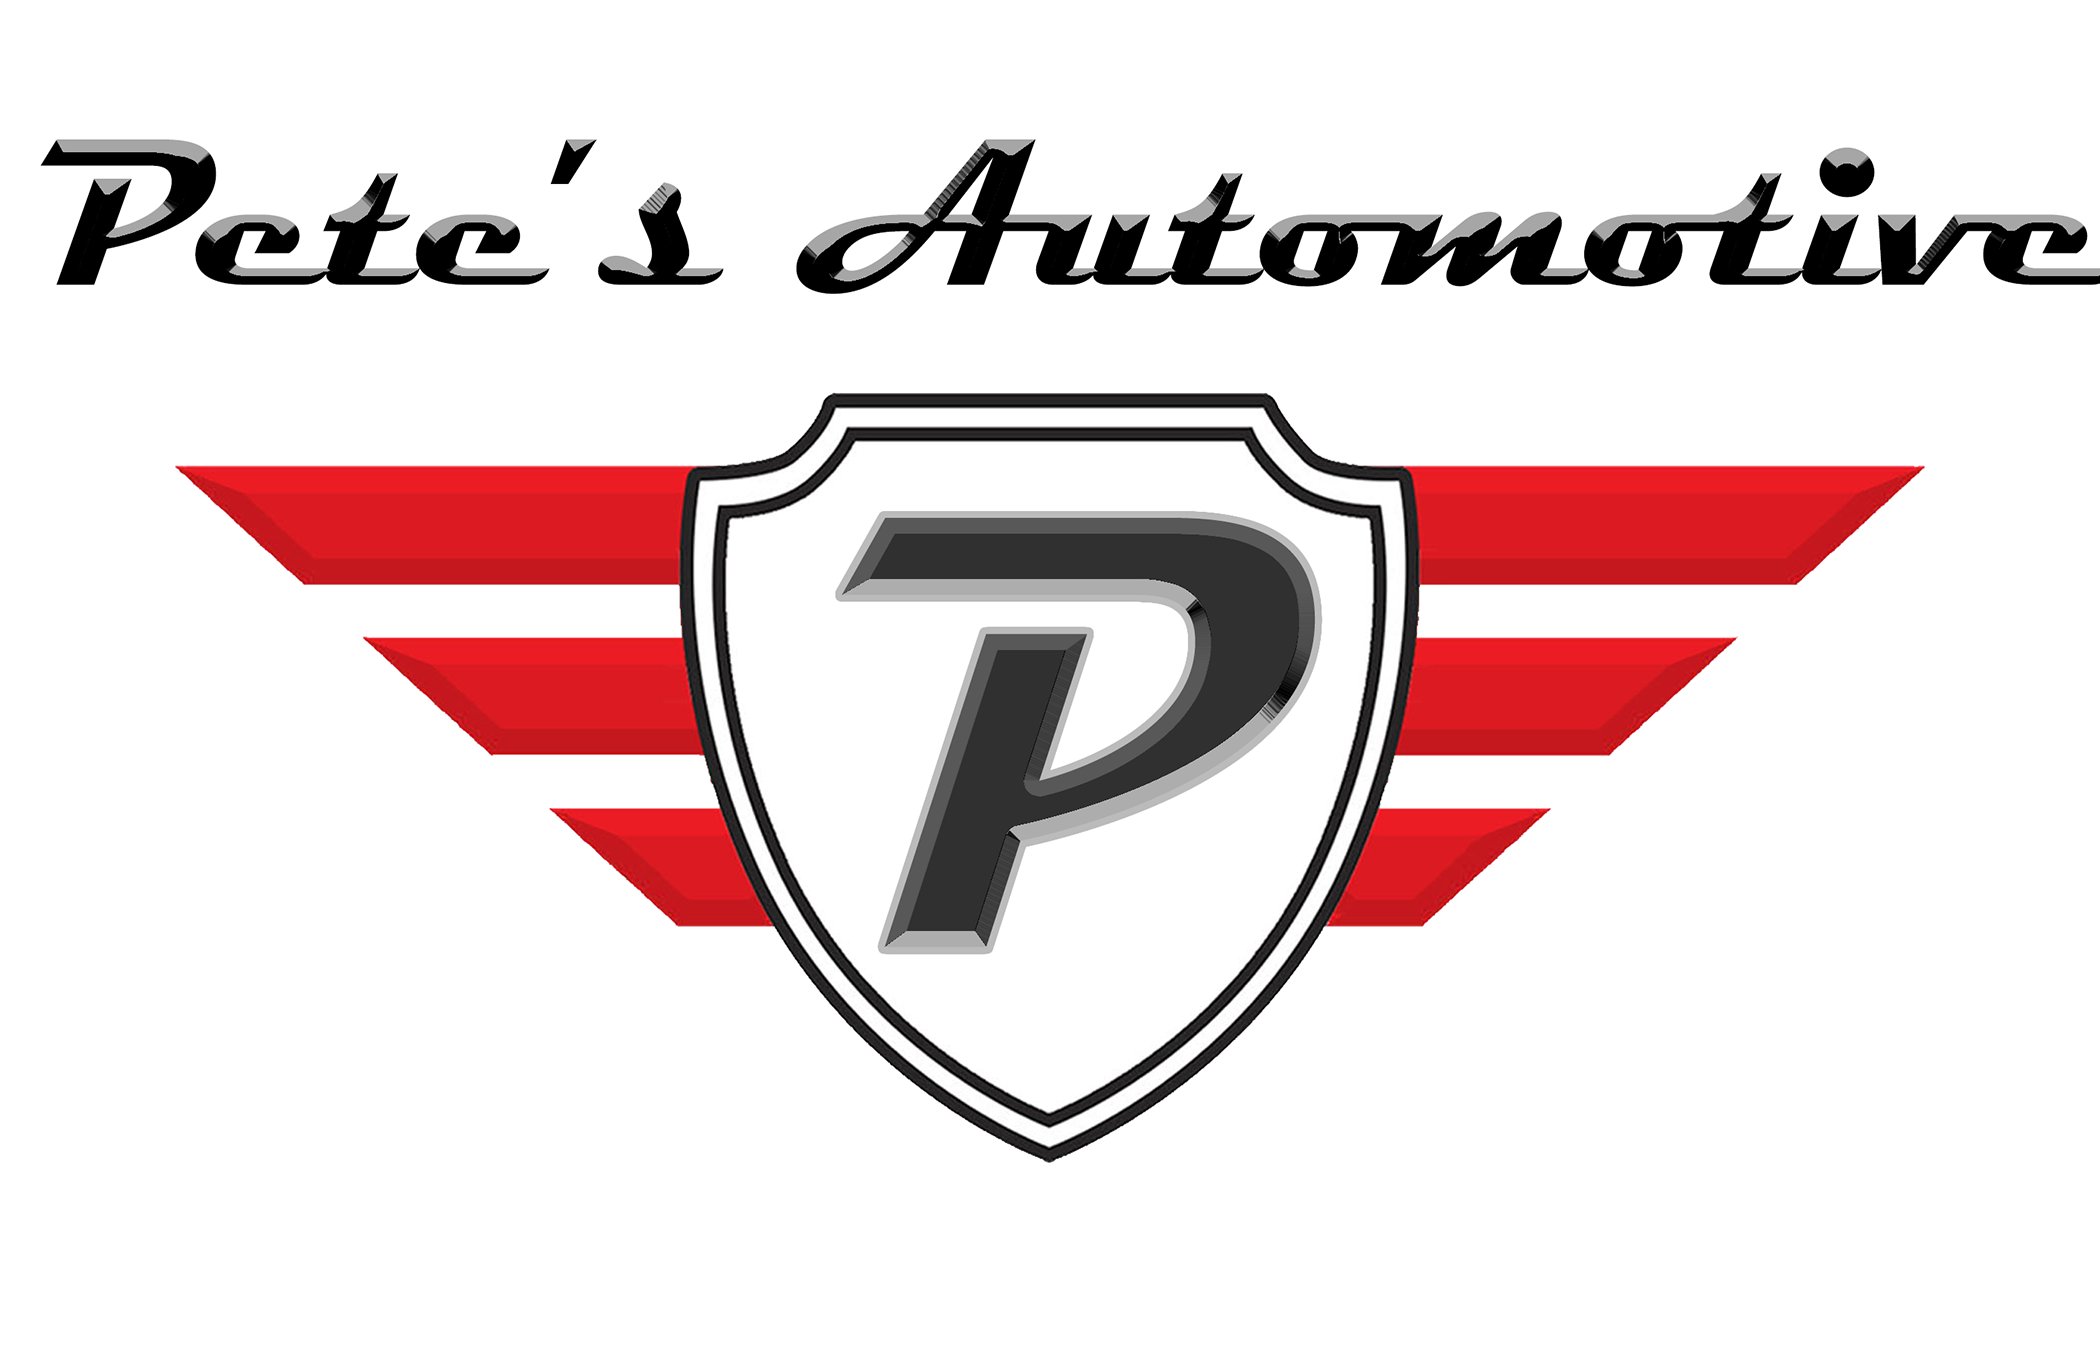 Pete’s Tire & Automotive